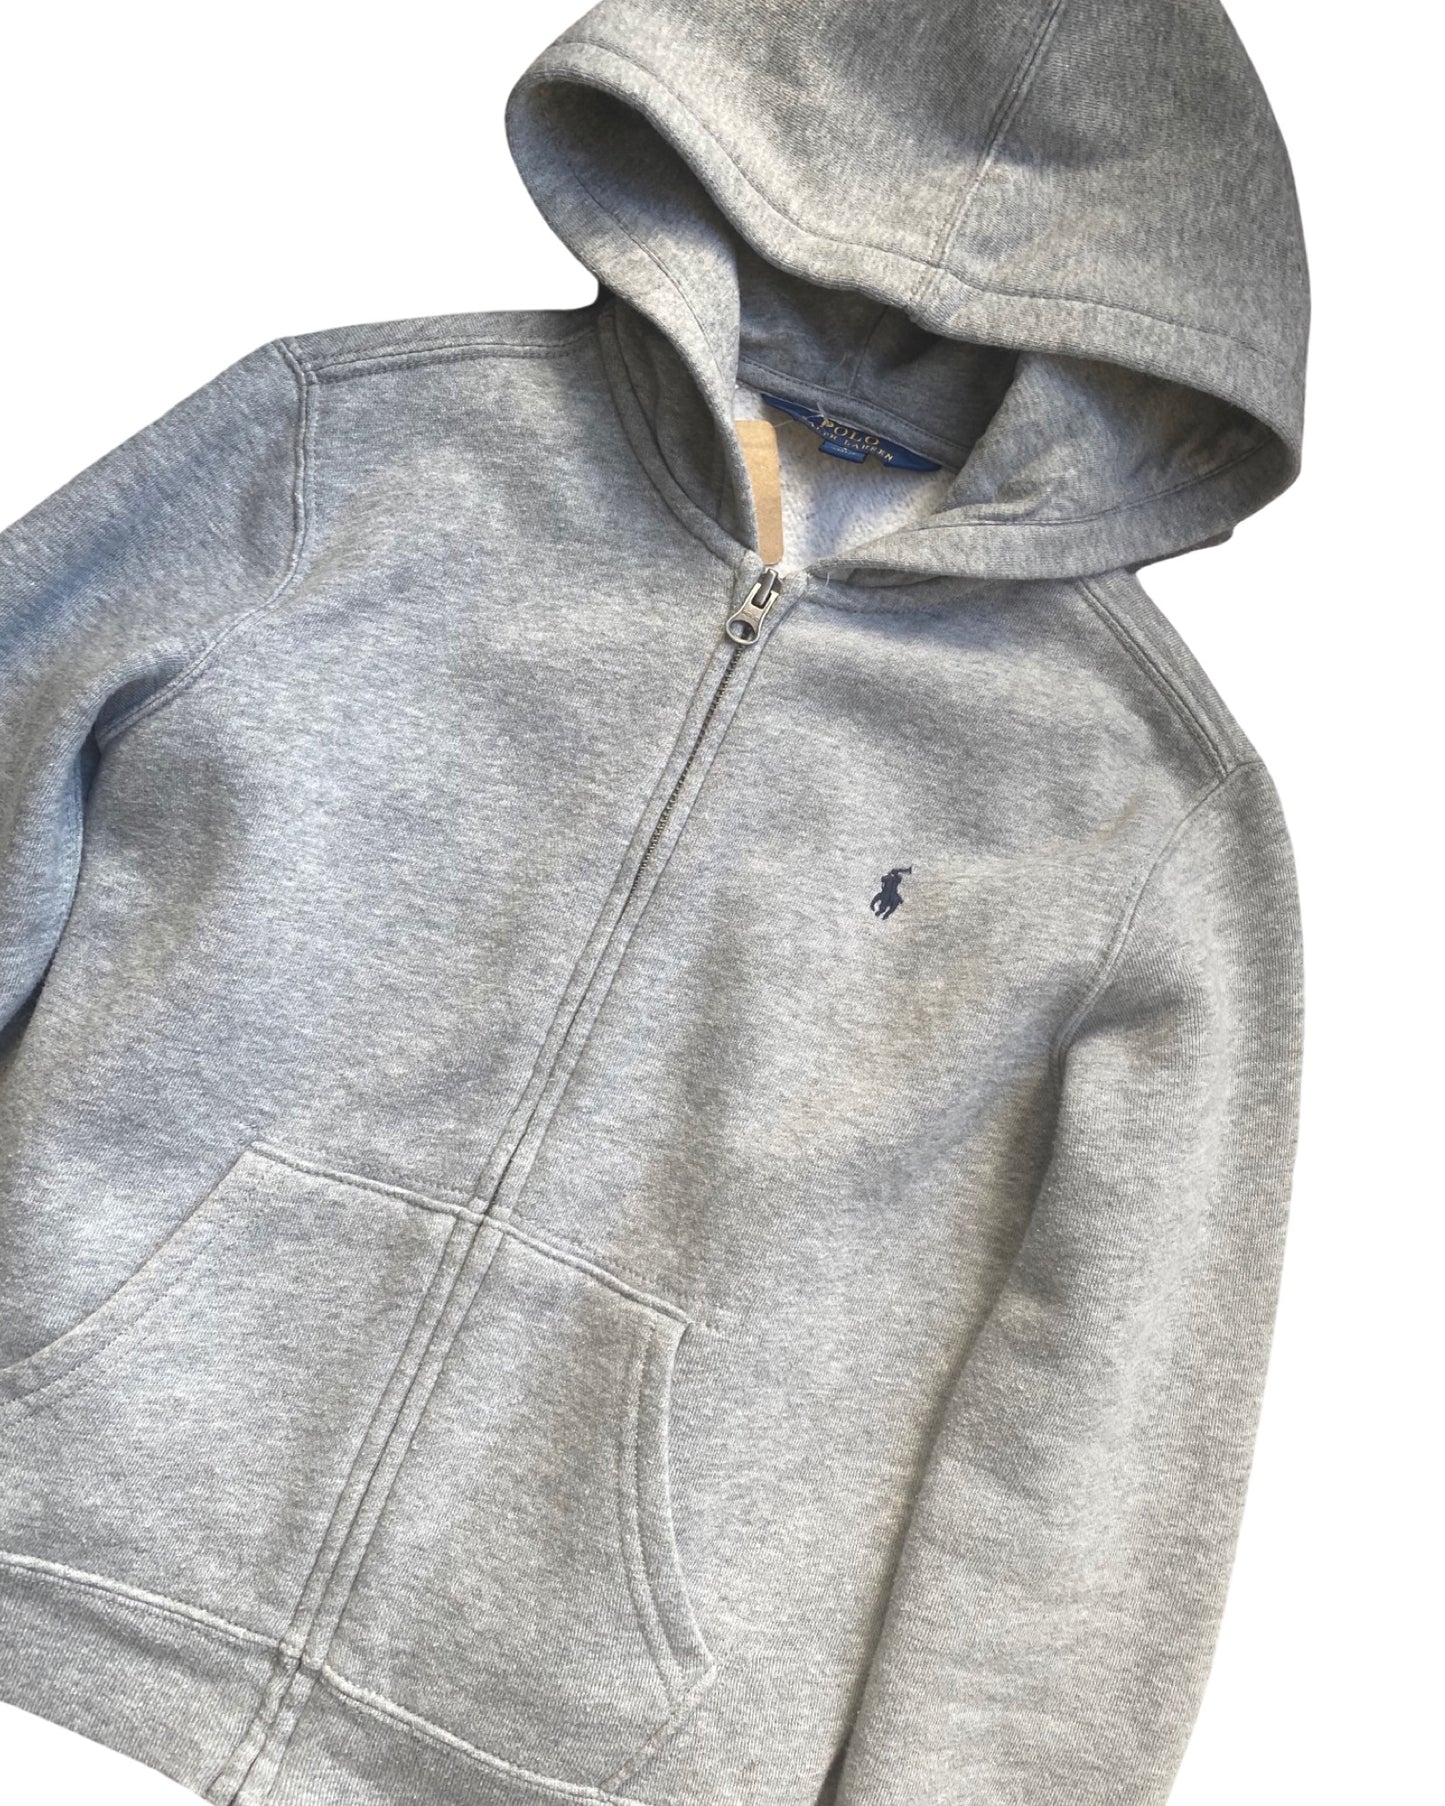 Ralph Lauren Polo zip up hoodie (6-7yrs)